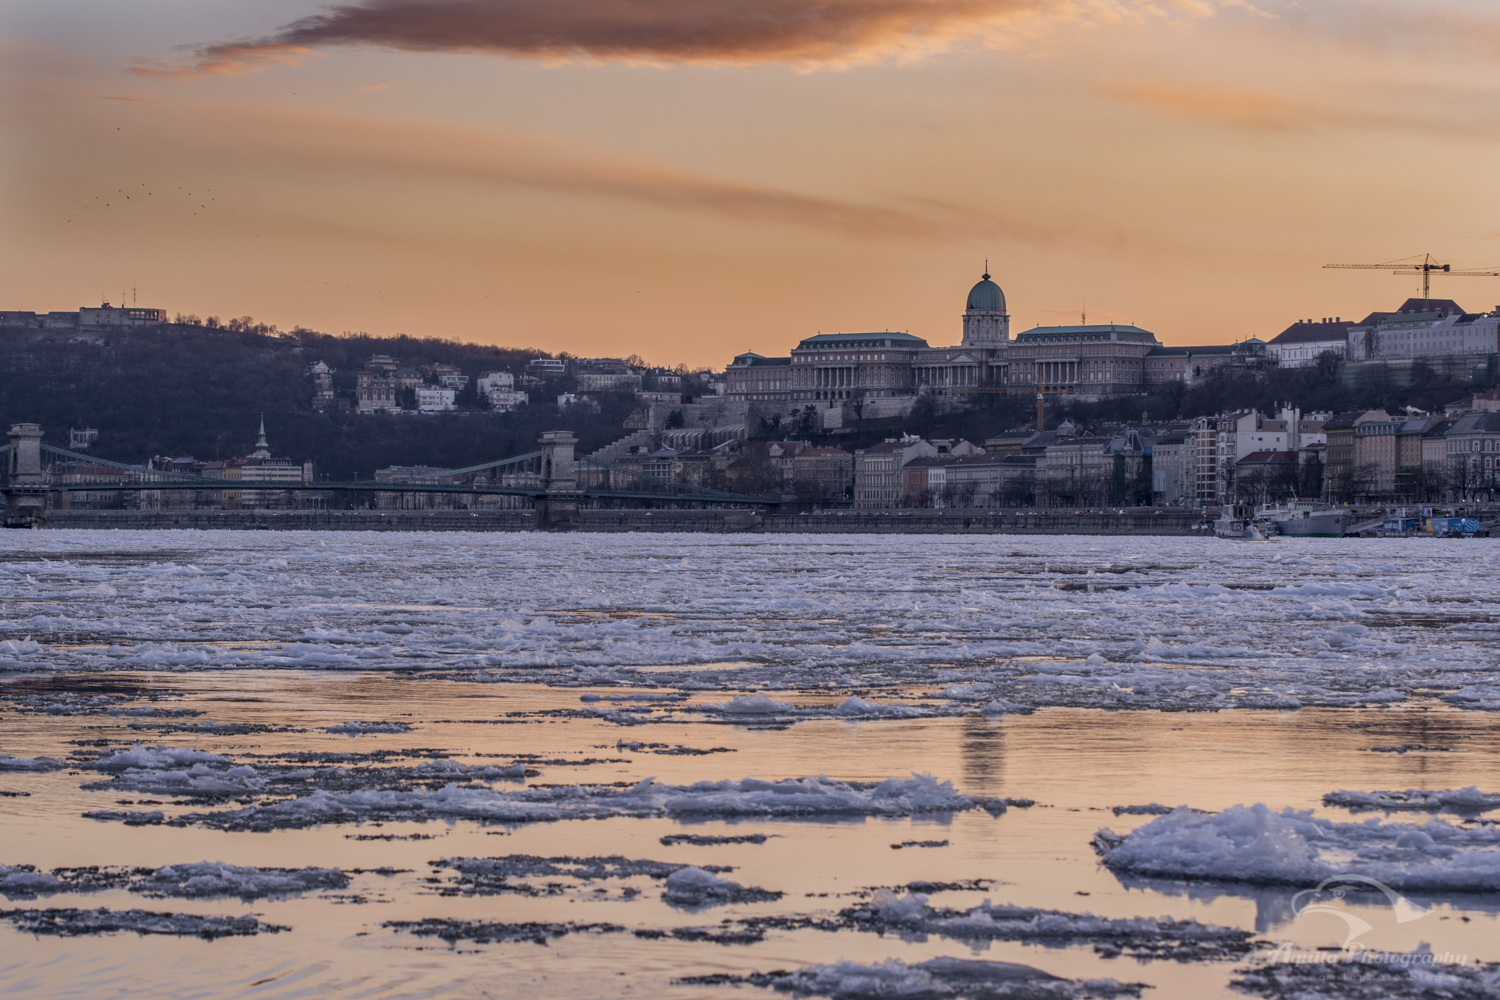 Így utazik le a több tonna jég a Dunán - Képriport